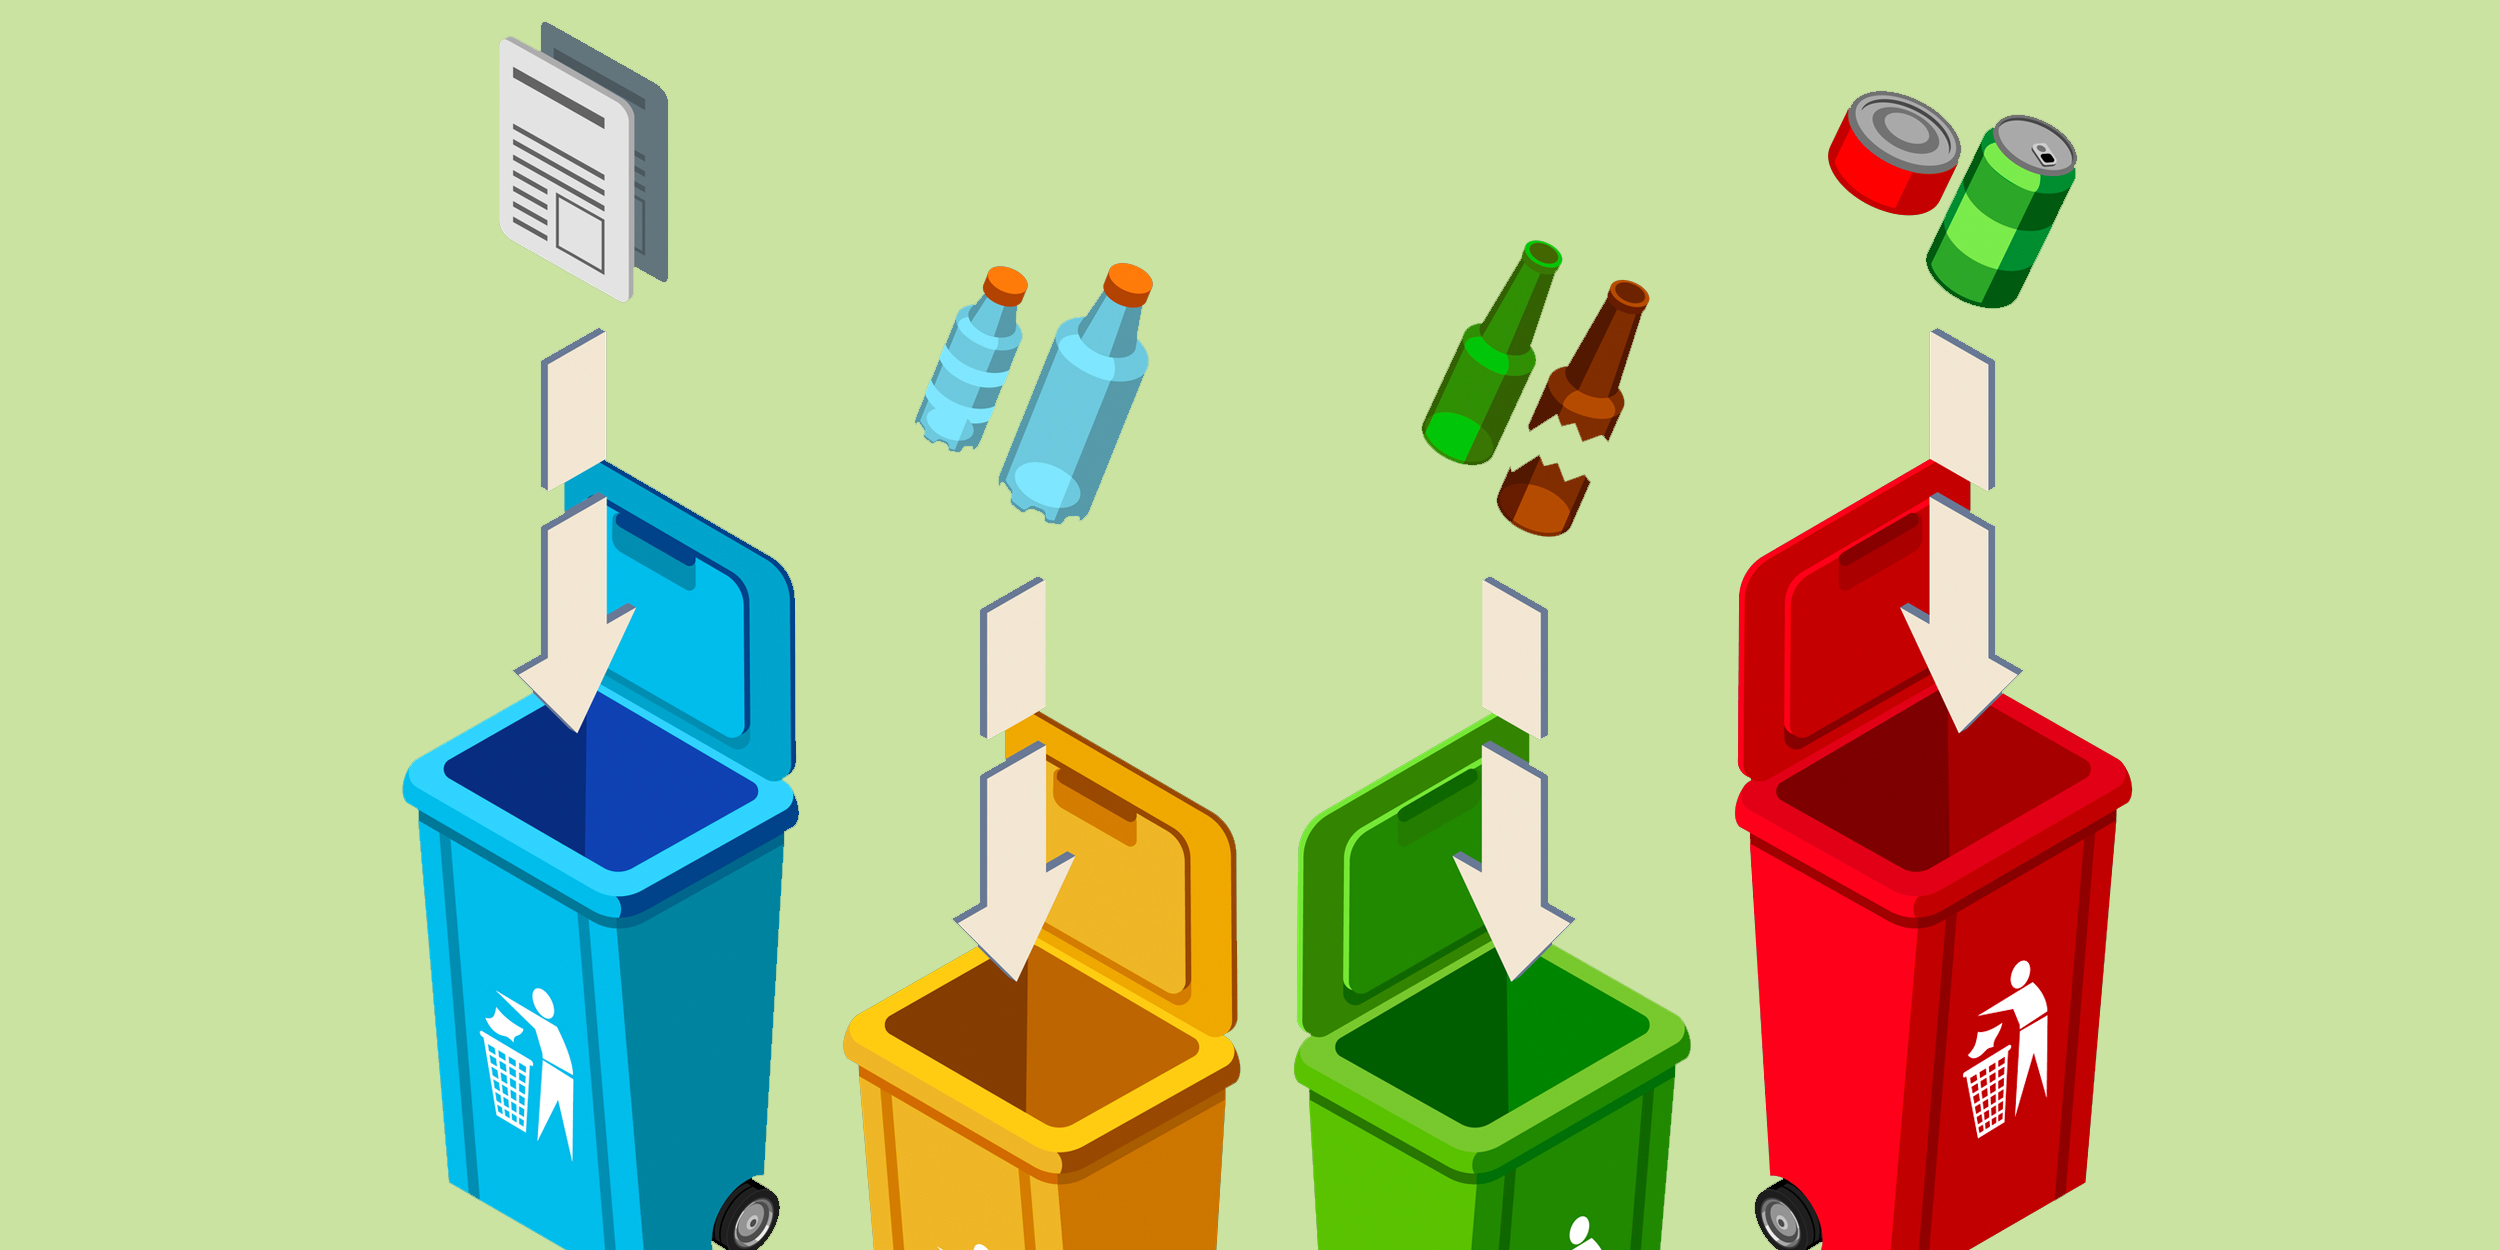 10 удачных примеров одежды и аксессуаров из мусора